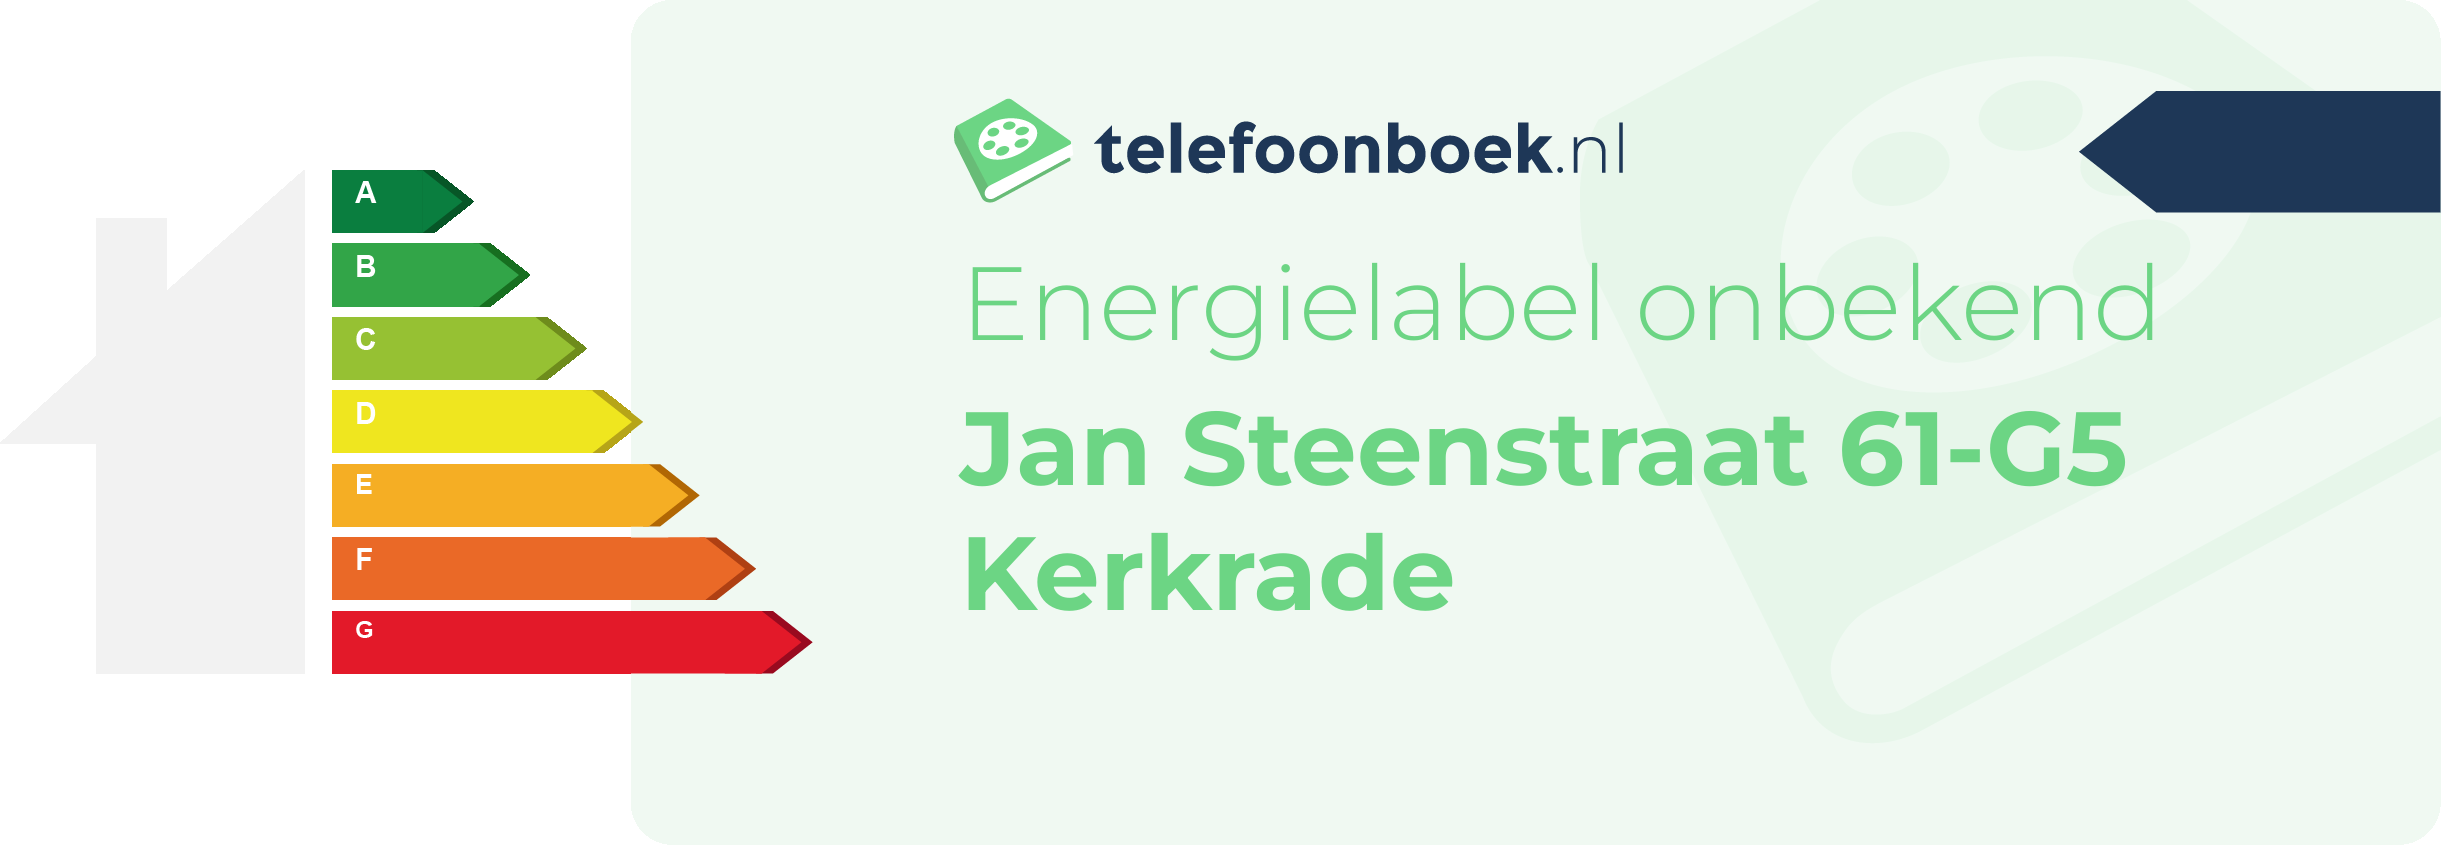 Energielabel Jan Steenstraat 61-G5 Kerkrade